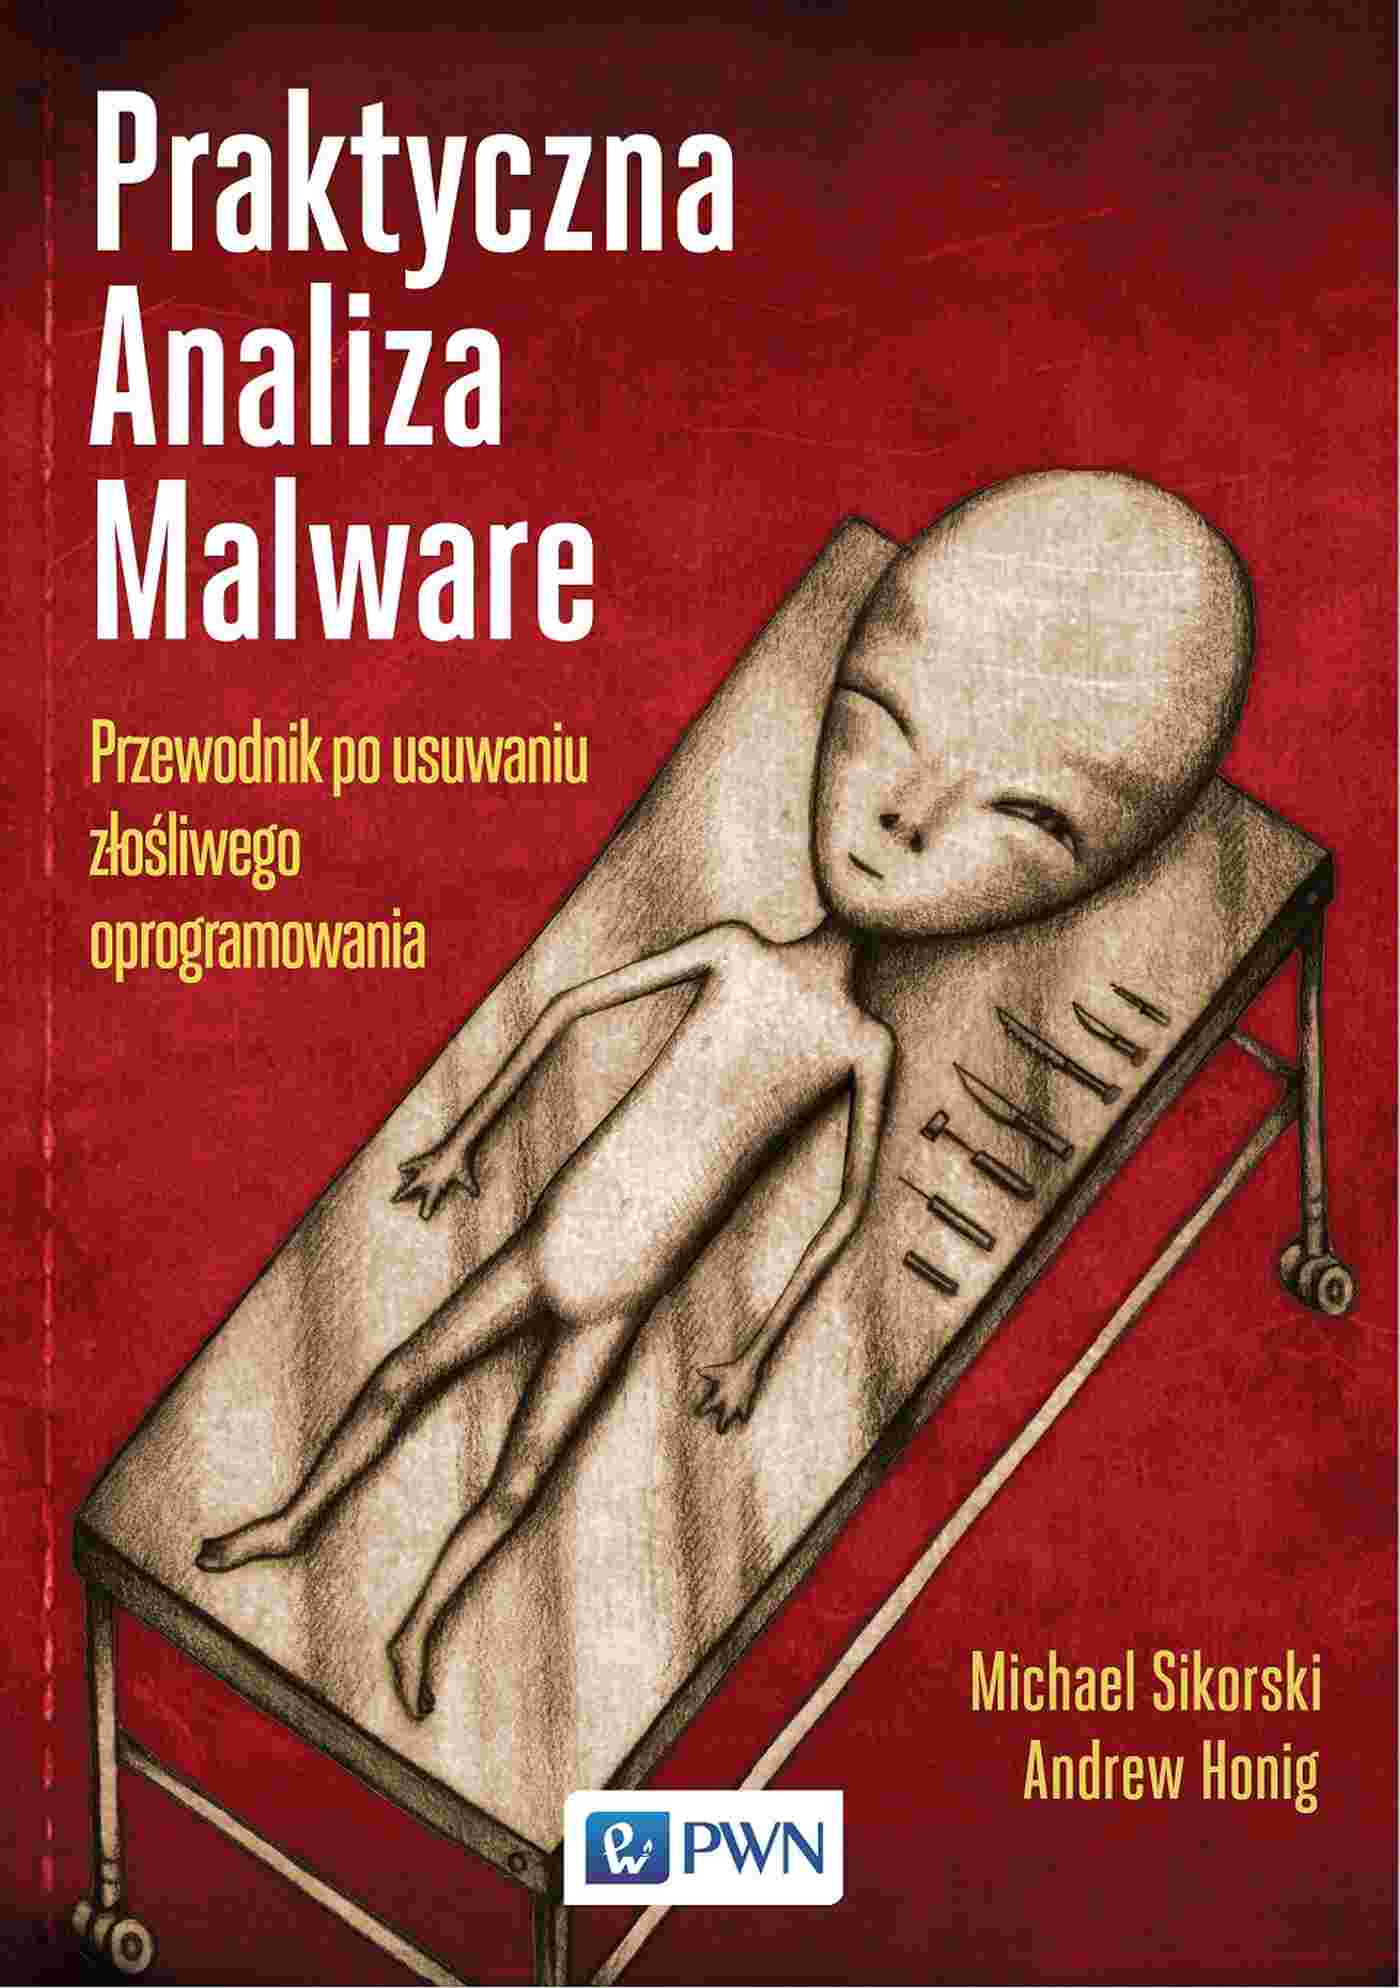 Kniha Praktyczna analiza malware. Przewodnik po usuwaniu złośliwego oprogramowania Michael Sikorski